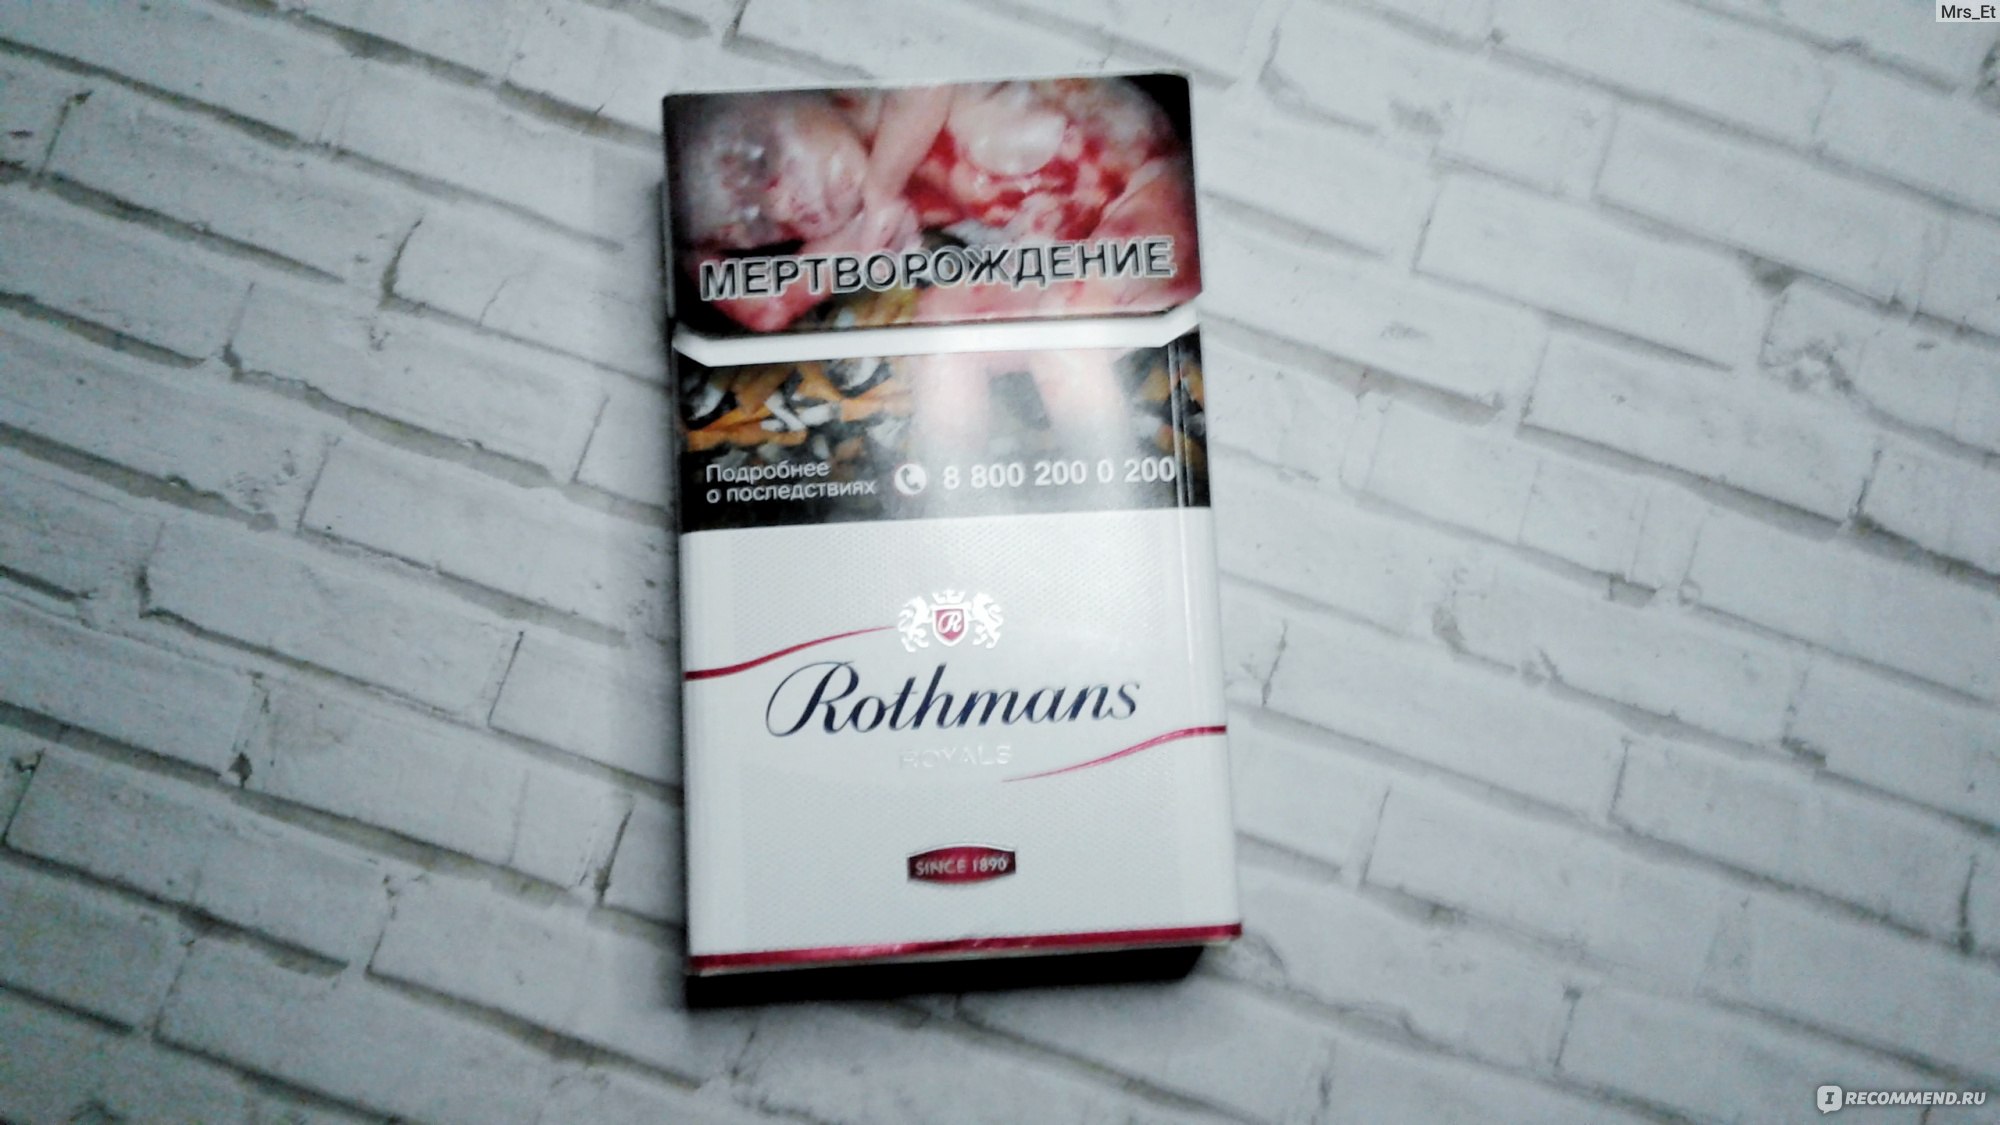 сигареты rothmans royals red фото